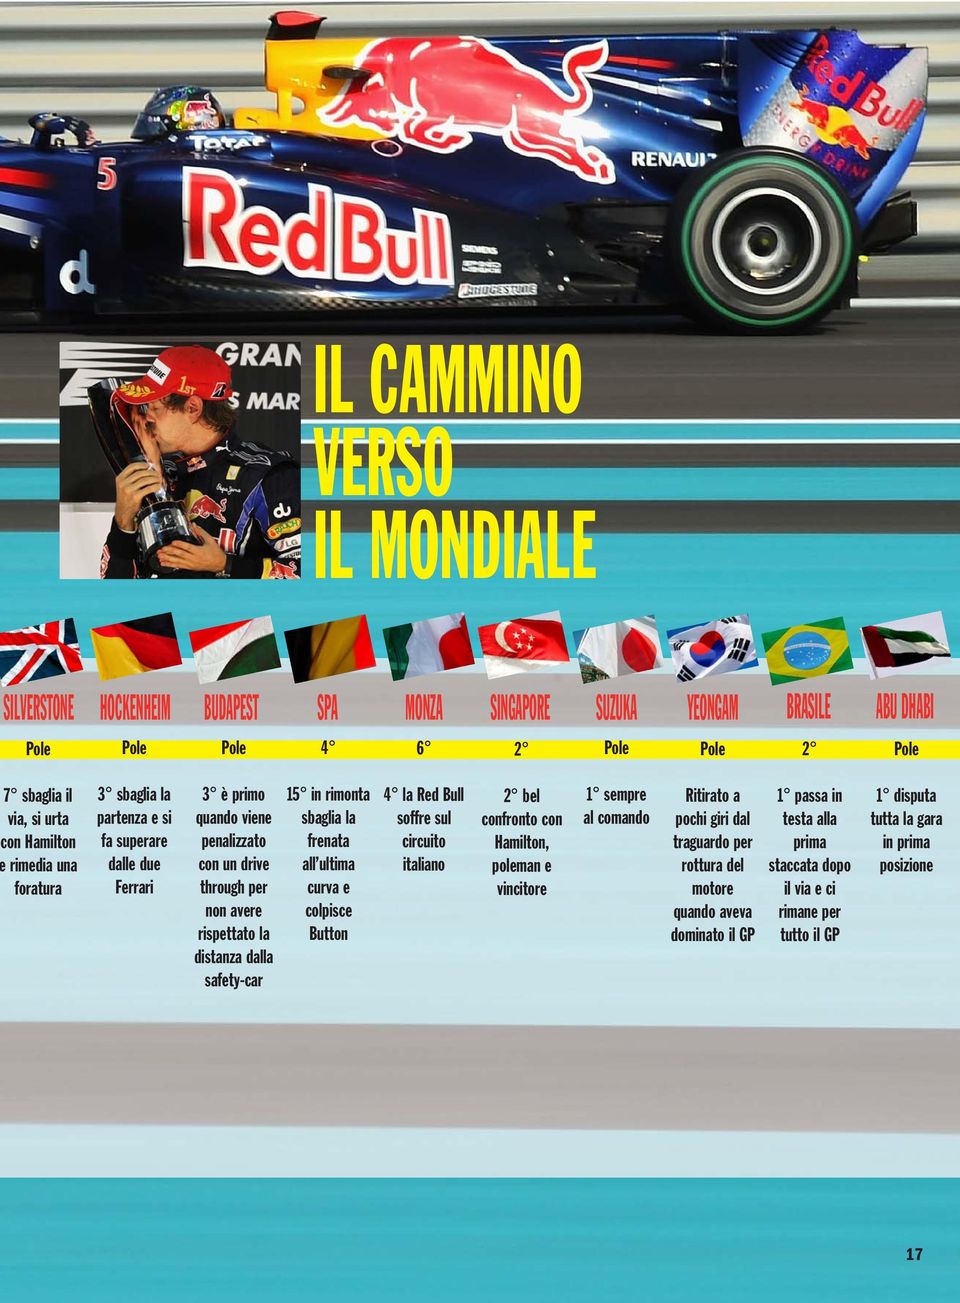 safety-car 15 in rimonta sbaglia la frenata all ultima curva e colpisce Button 4 la Red Bull soffre sul circuito italiano 2 bel confronto con Hamilton, poleman e vincitore 1 sempre al comando